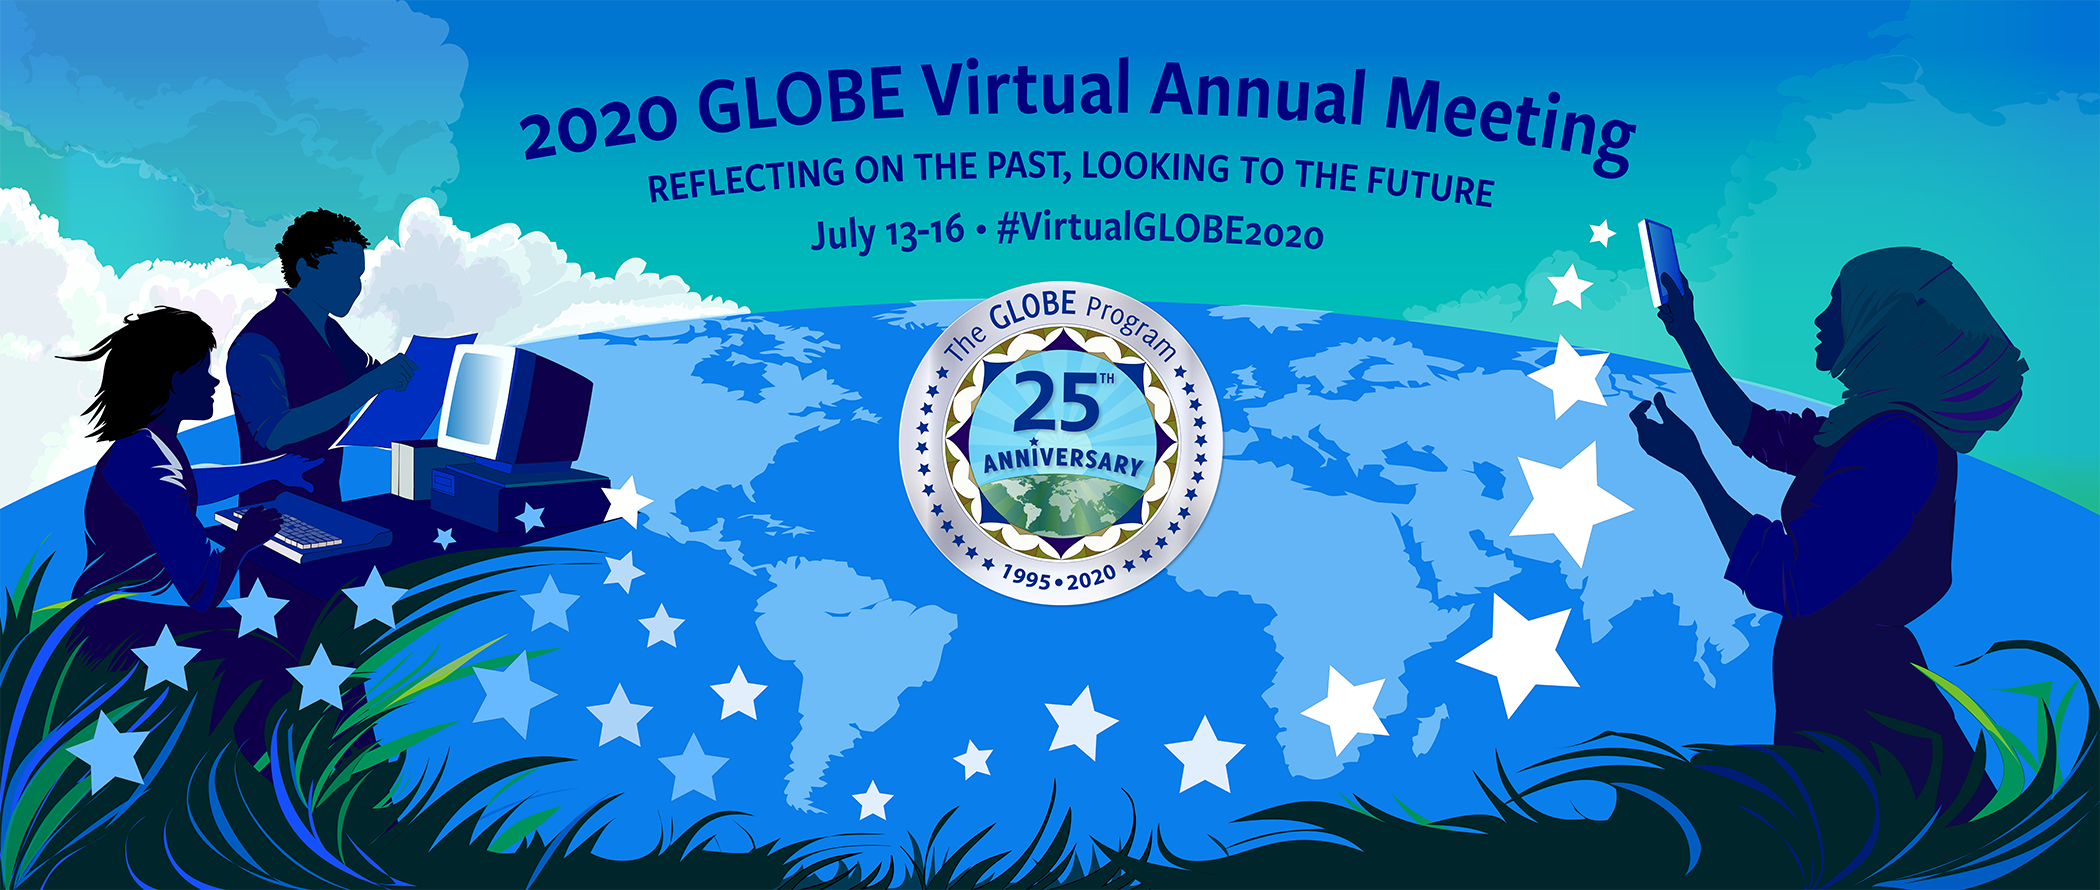 2020 GLOBE Virtual Annual Meeting Banner